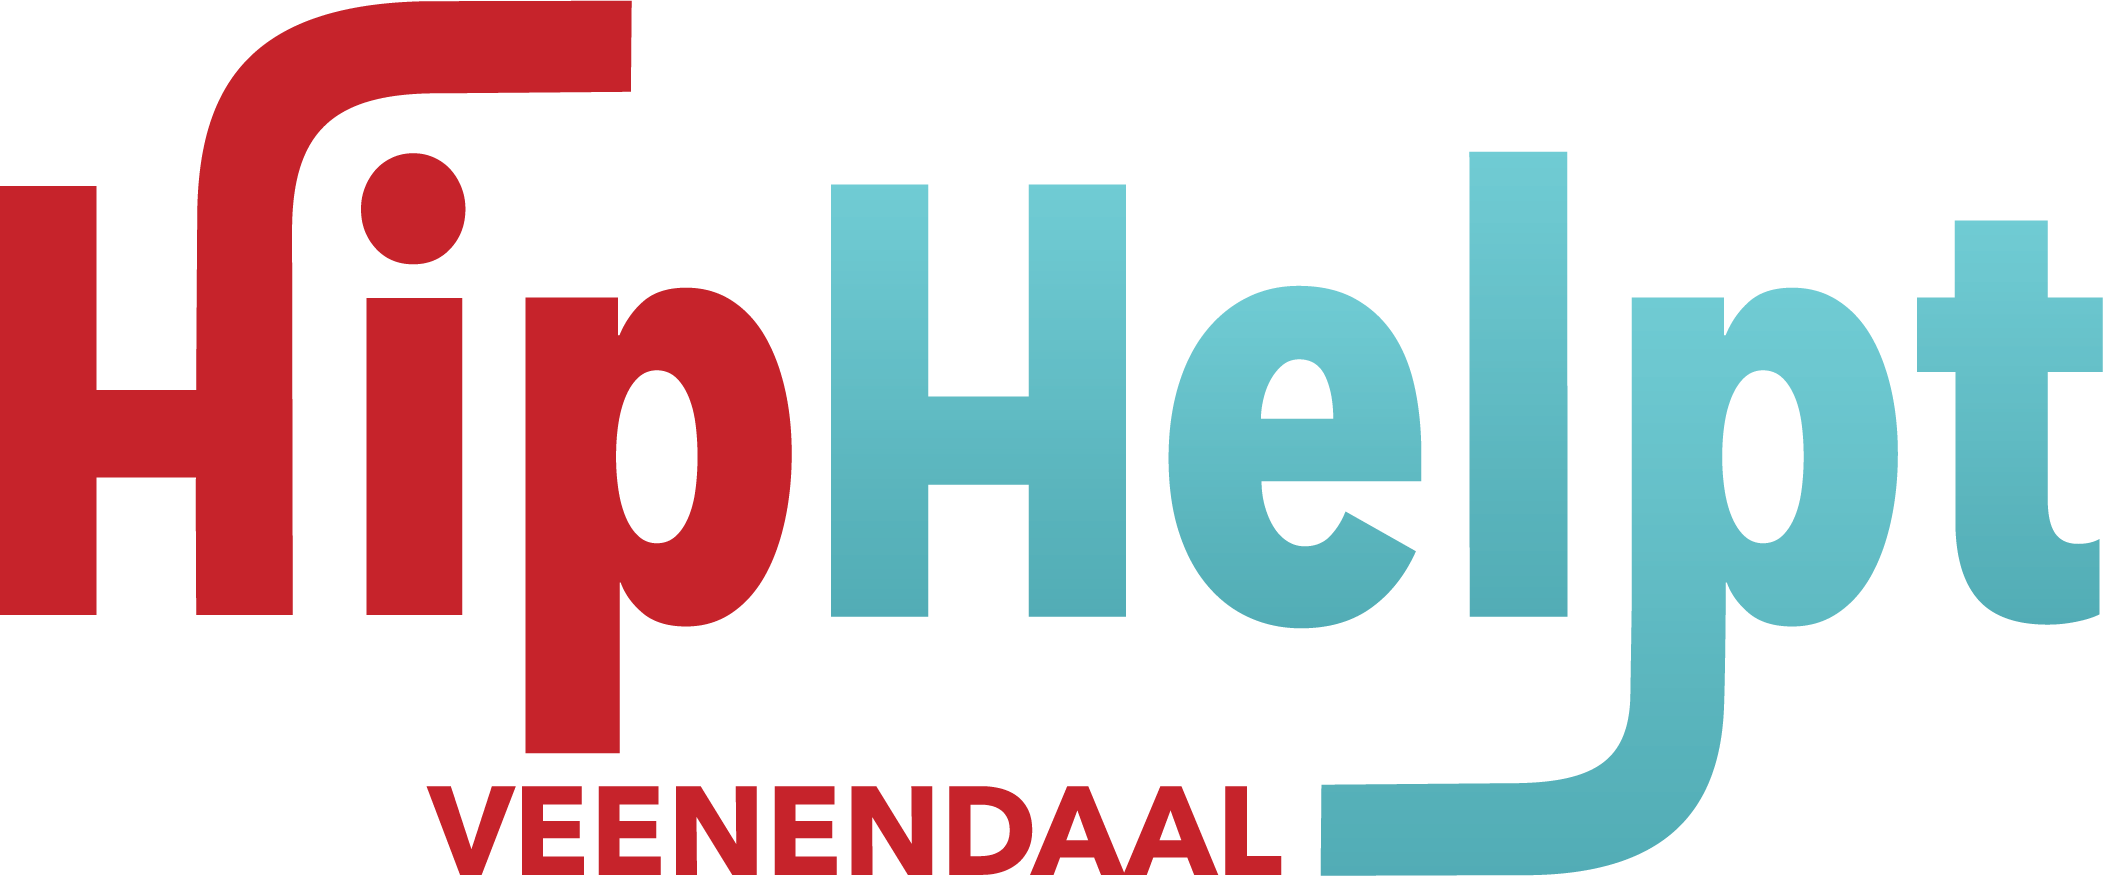 HipHelpt Veenendaal